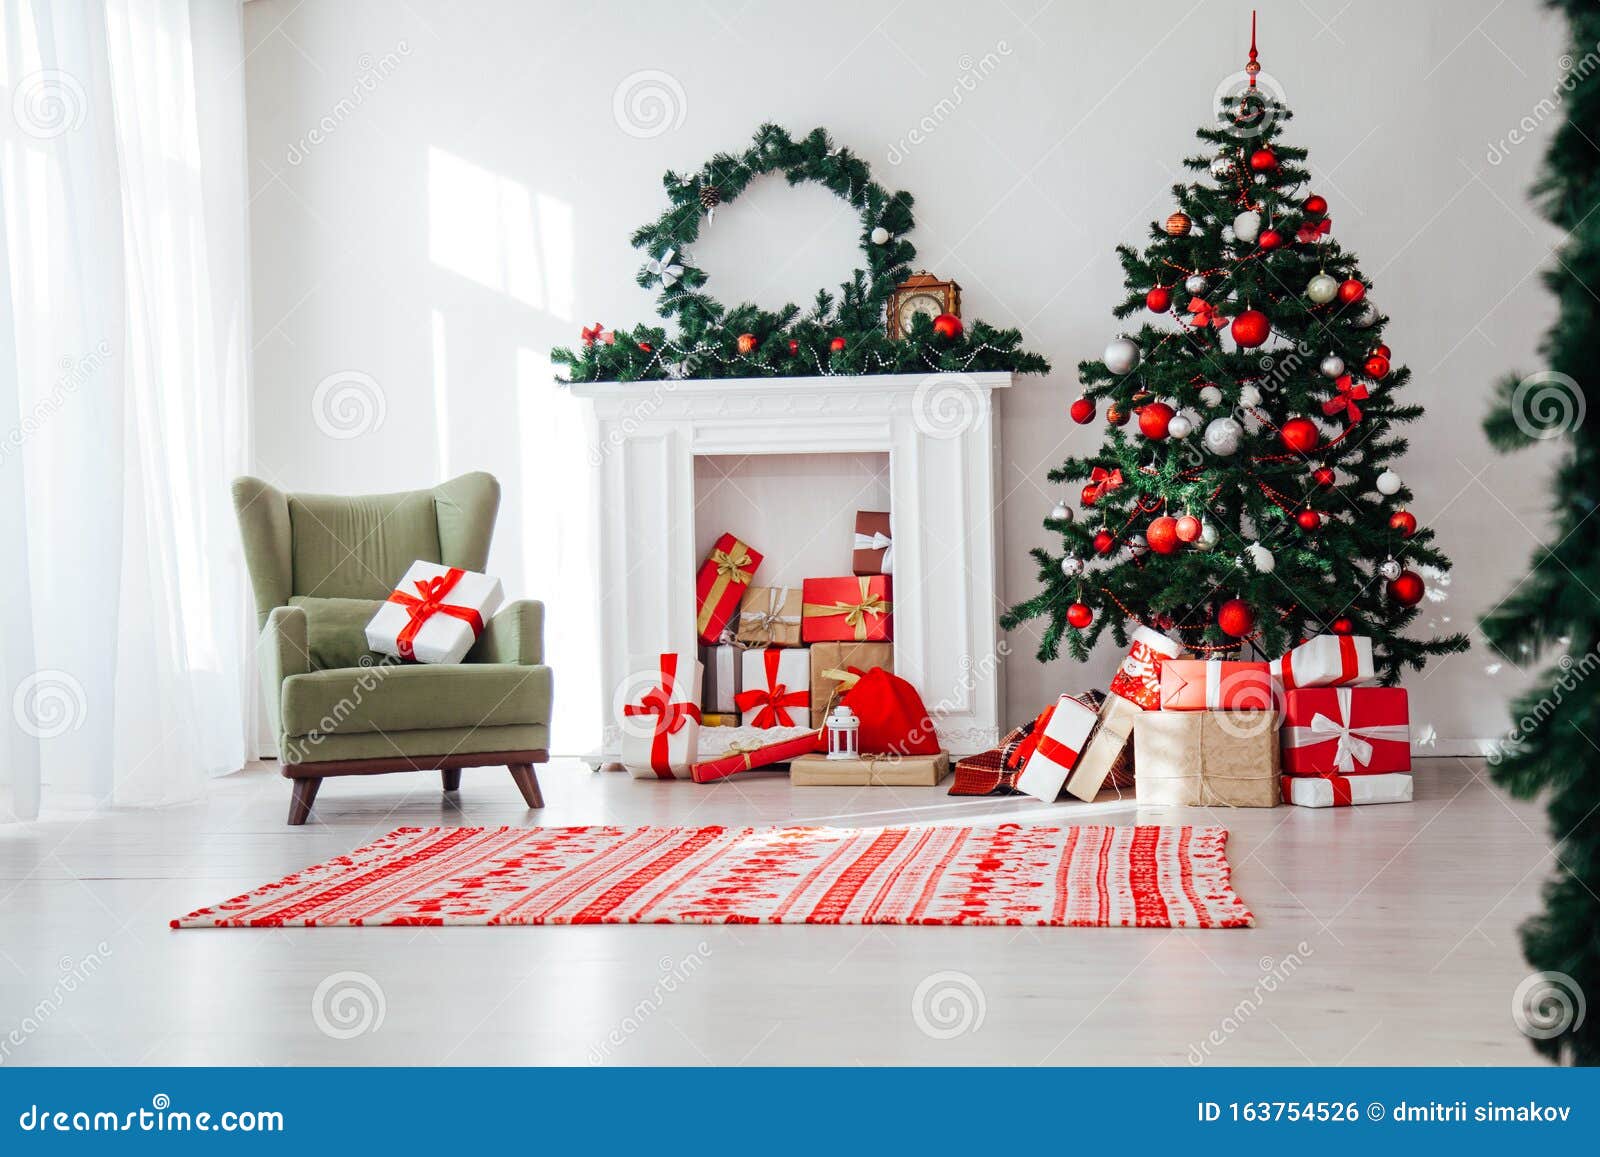 Nhà của bạn chưa có bộ trang trí nào cho mùa Giáng sinh? Đừng lo lắng! Những bức hình nền nhà Giáng sinh đầy ấm áp sẽ giúp bạn thổi cuộc sống vào ngôi nhà của mình. Hình ảnh của những căn nhà được trang trí lung linh, yên bình đầy ấm áp sẽ làm cho không khí cuối năm của bạn trở nên đặc biệt hơn bao giờ hết.